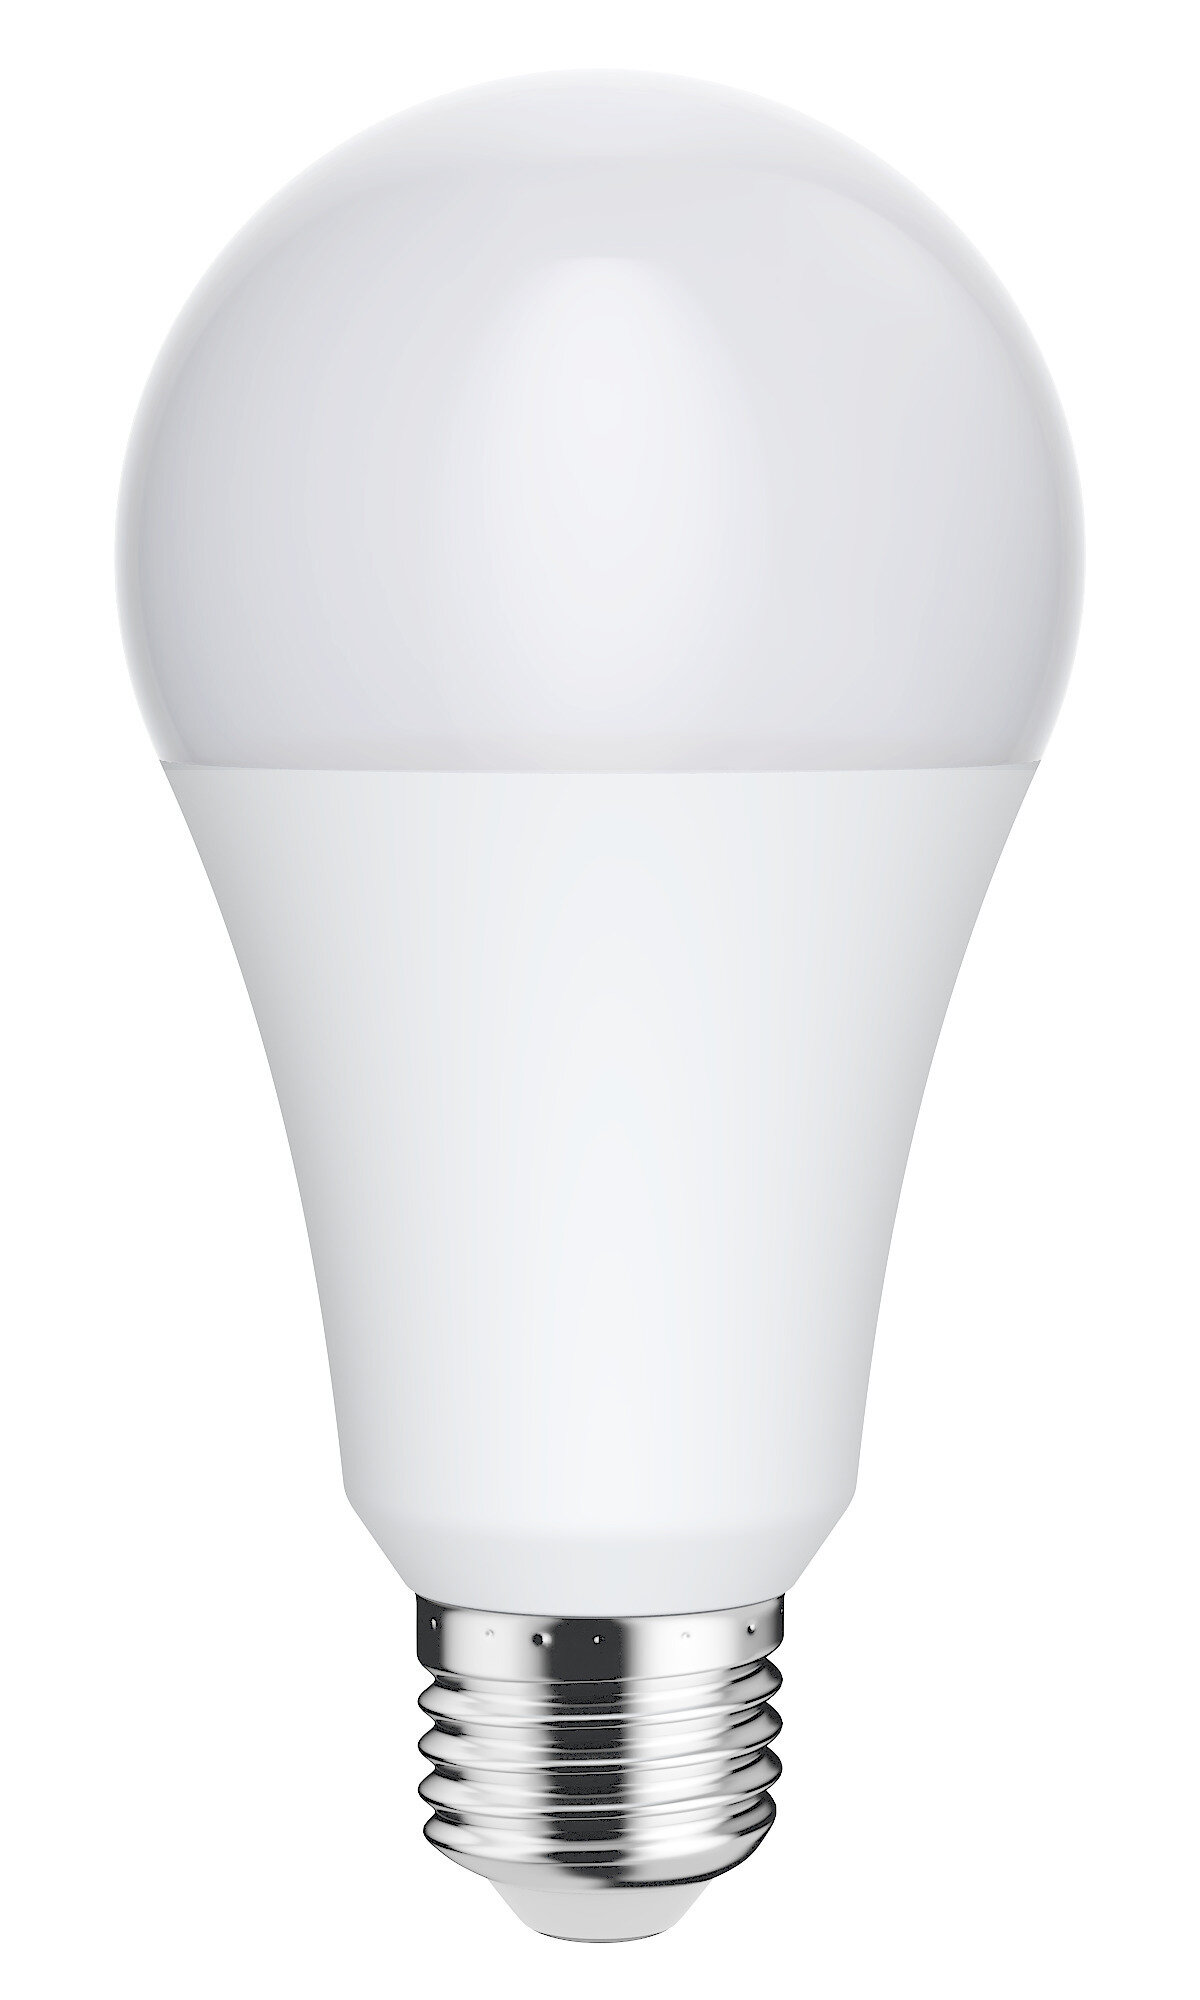 Лампочка светодиодная Lexman груша E27 2000 лм нейтральный белый свет 18 Вт